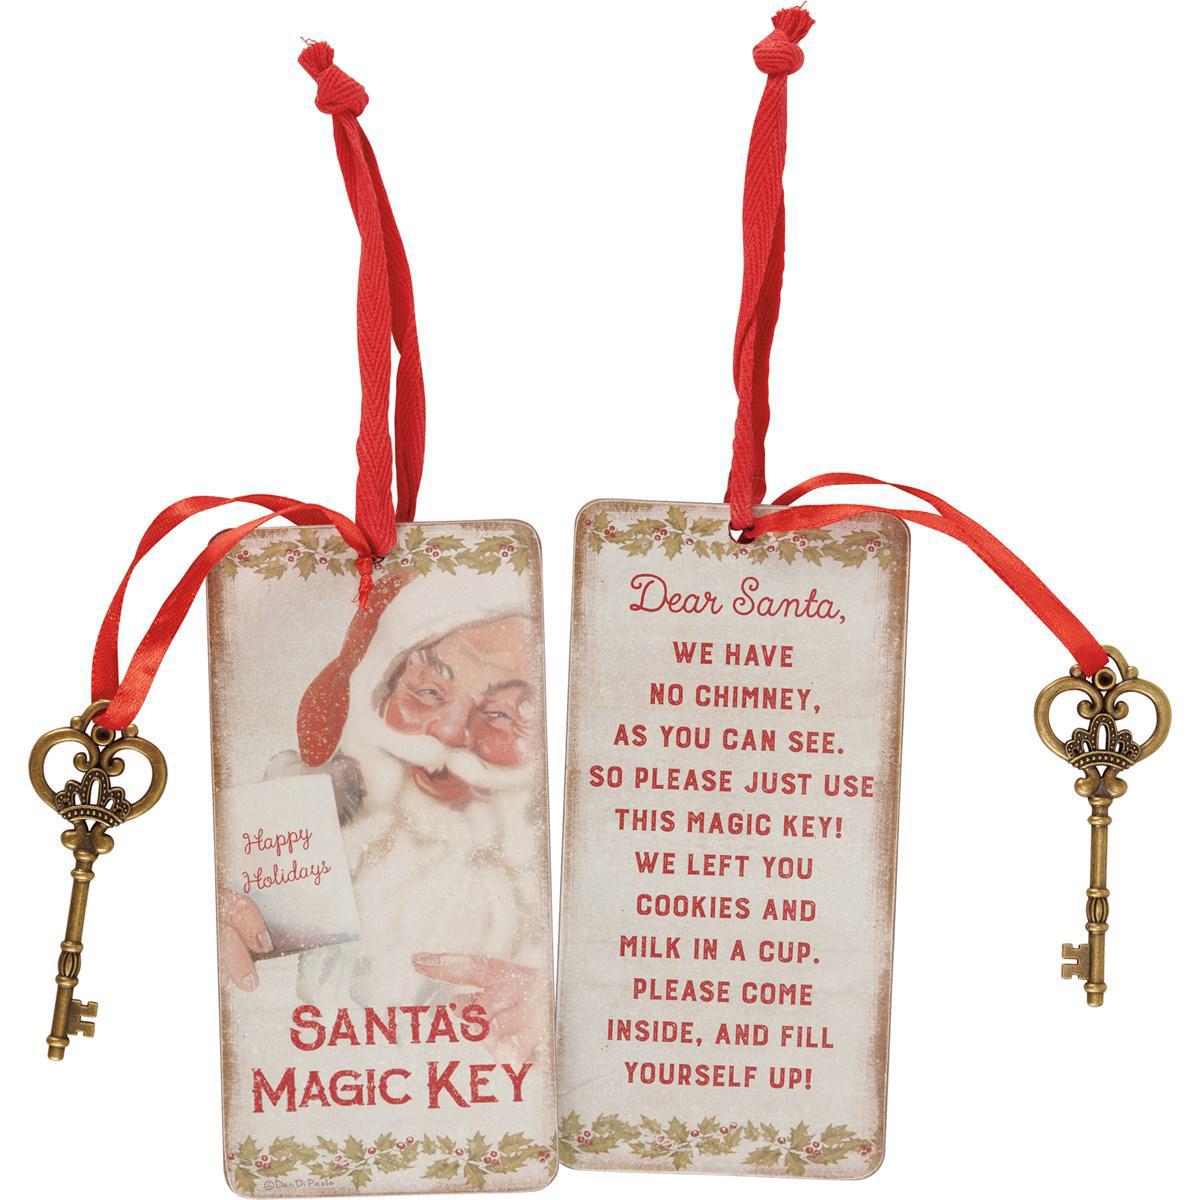 Santa's Magic Key Door Ornament